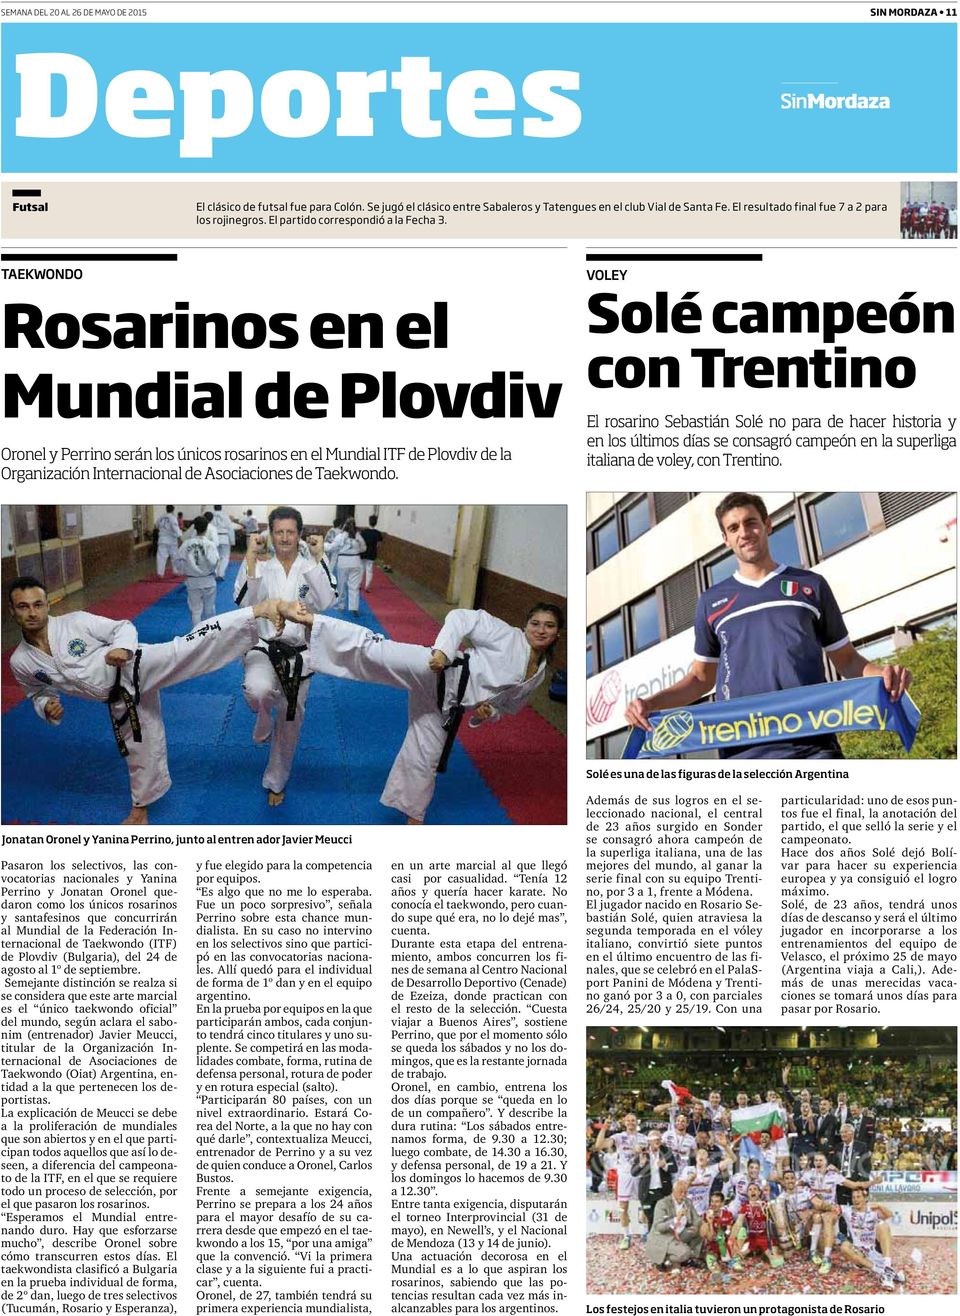 TAEKWONDO Rosarinos en el Mundial de Plovdiv Oronel y Perrino serán los únicos rosarinos en el Mundial ITF de Plovdiv de la Organización Internacional de Asociaciones de Taekwondo.